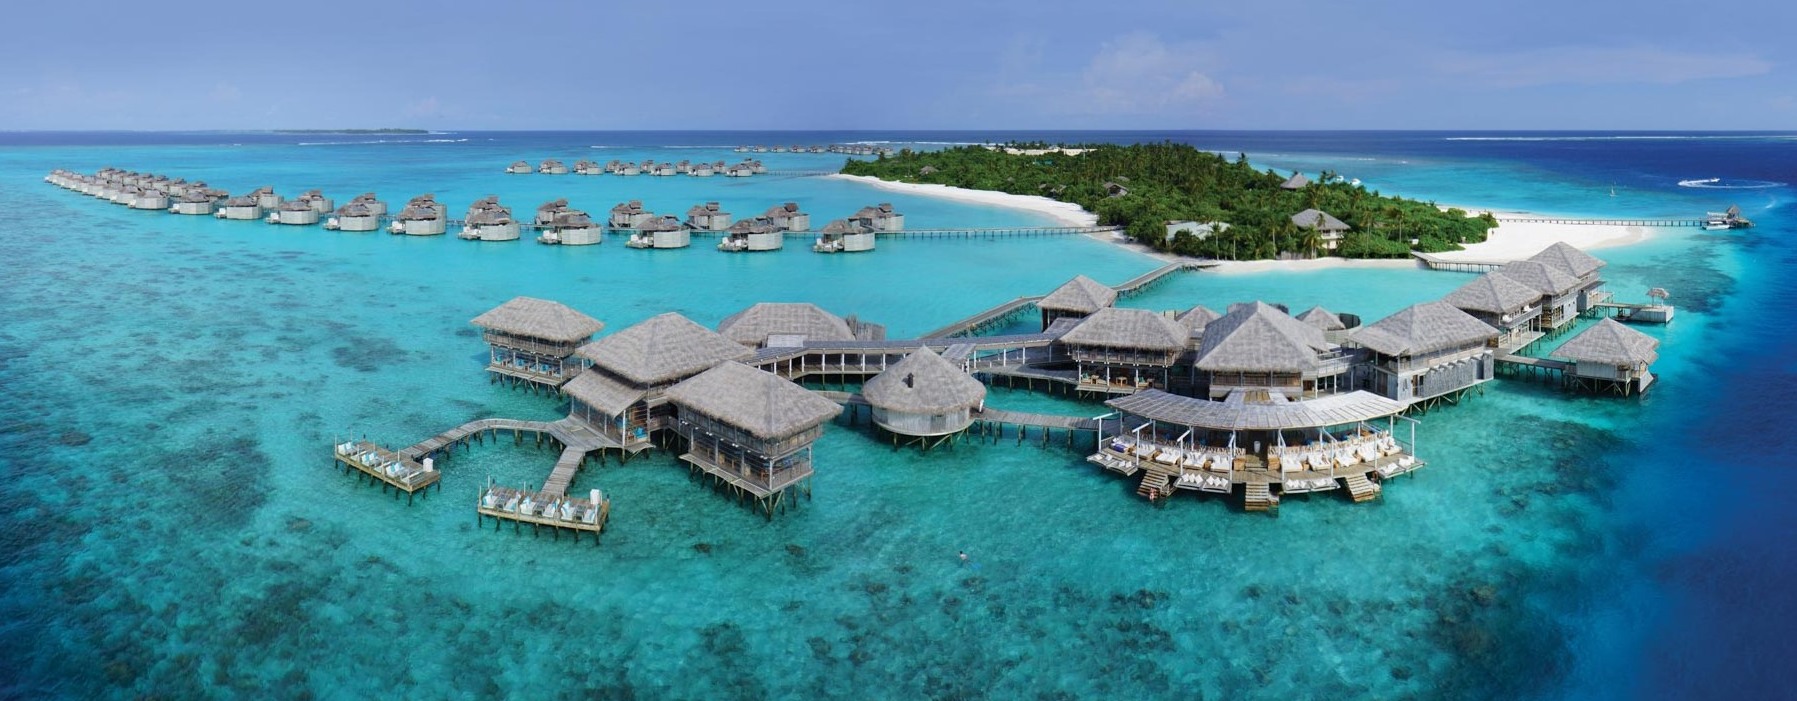 Maldives holiday